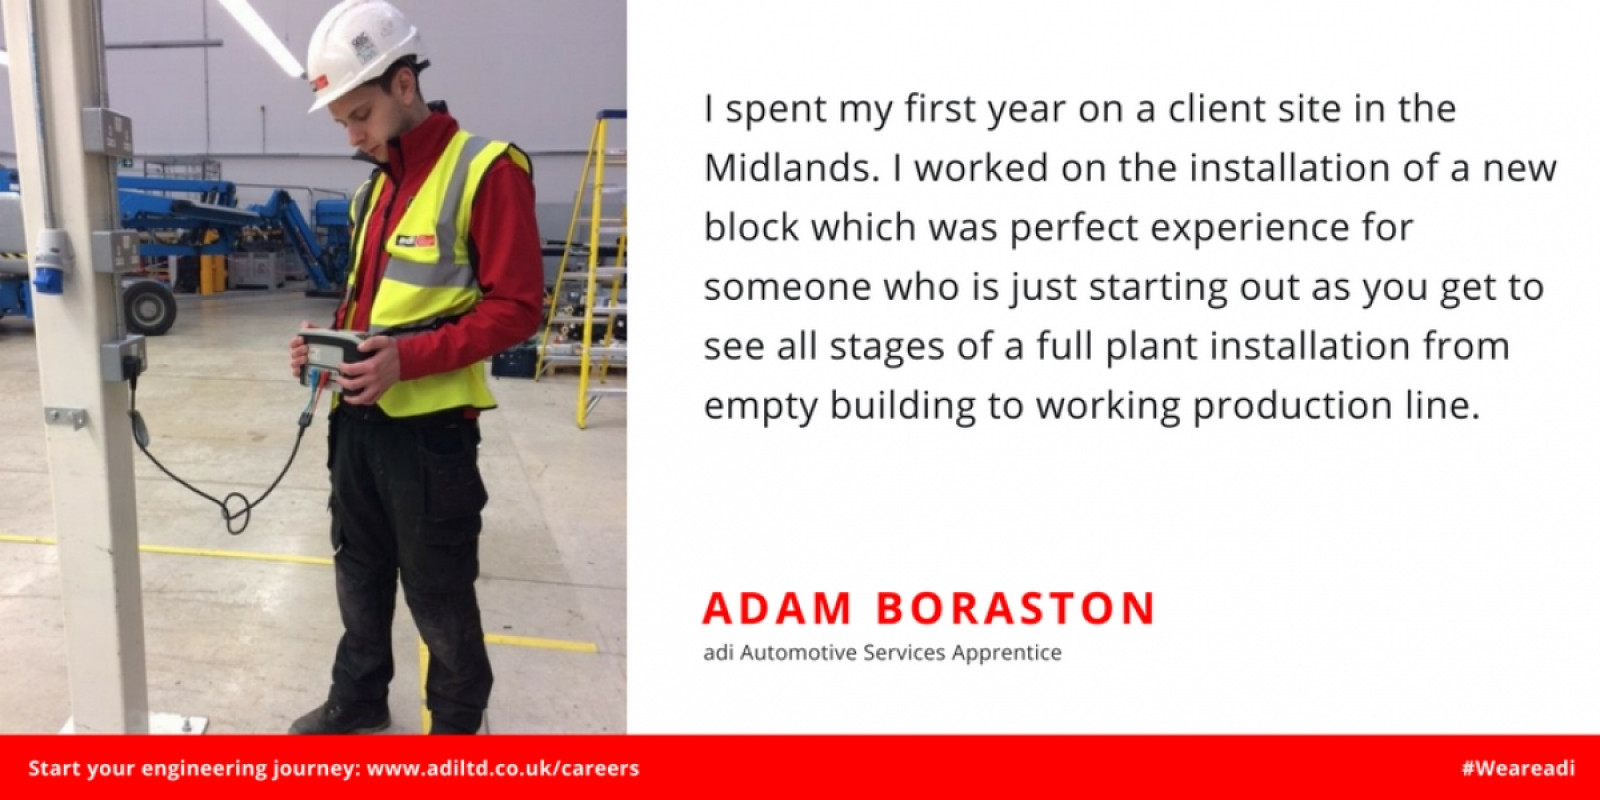 Apprentice Case Study: Adam Boraston Shares His Ap...